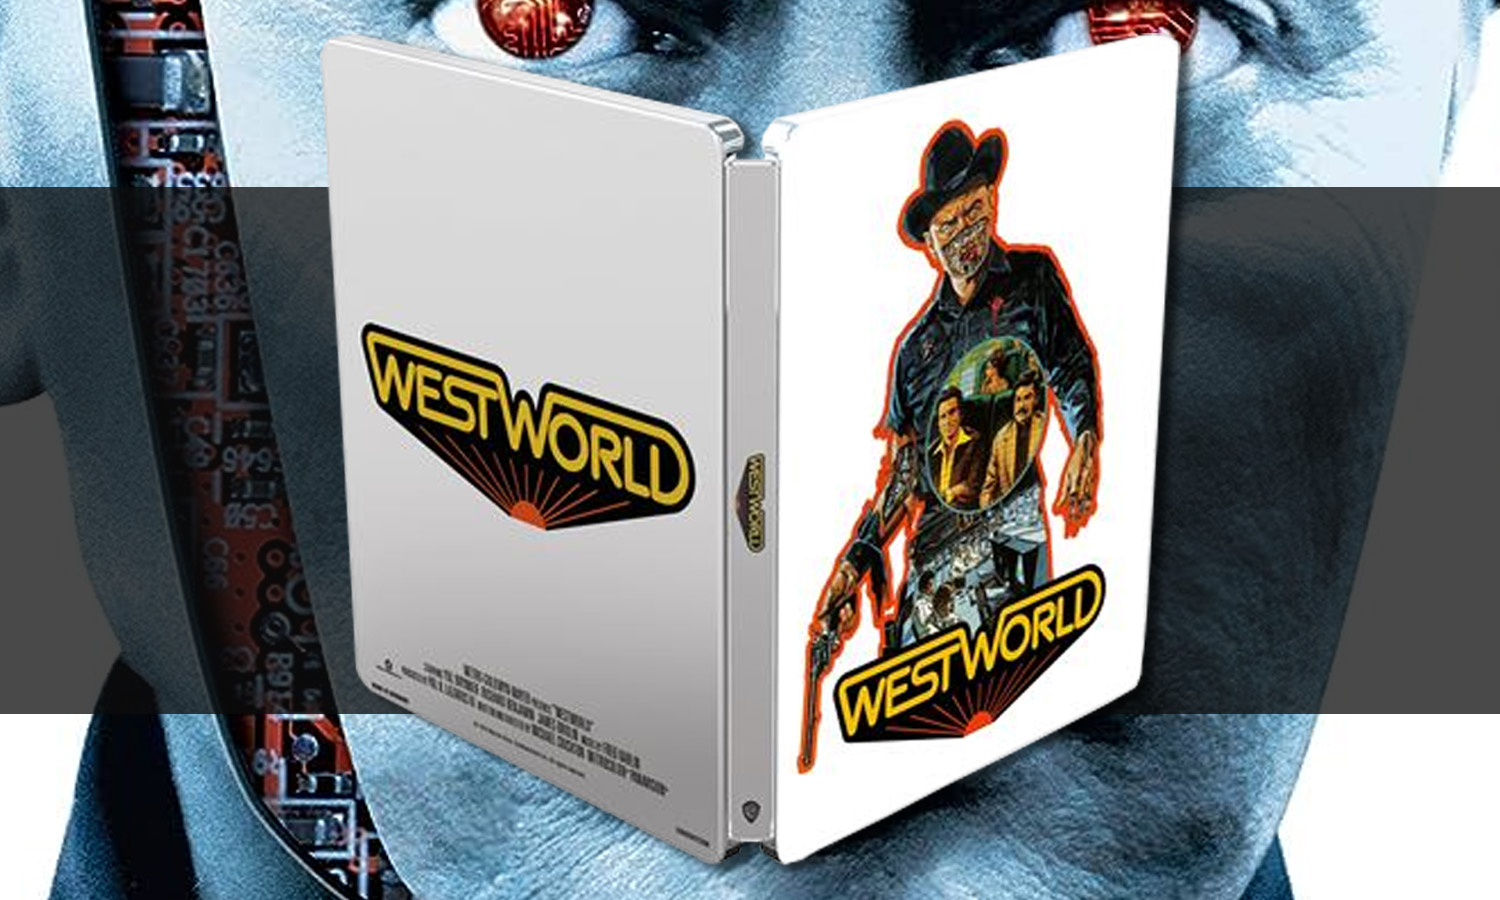 slider mondwest westworld blu ray steelbook